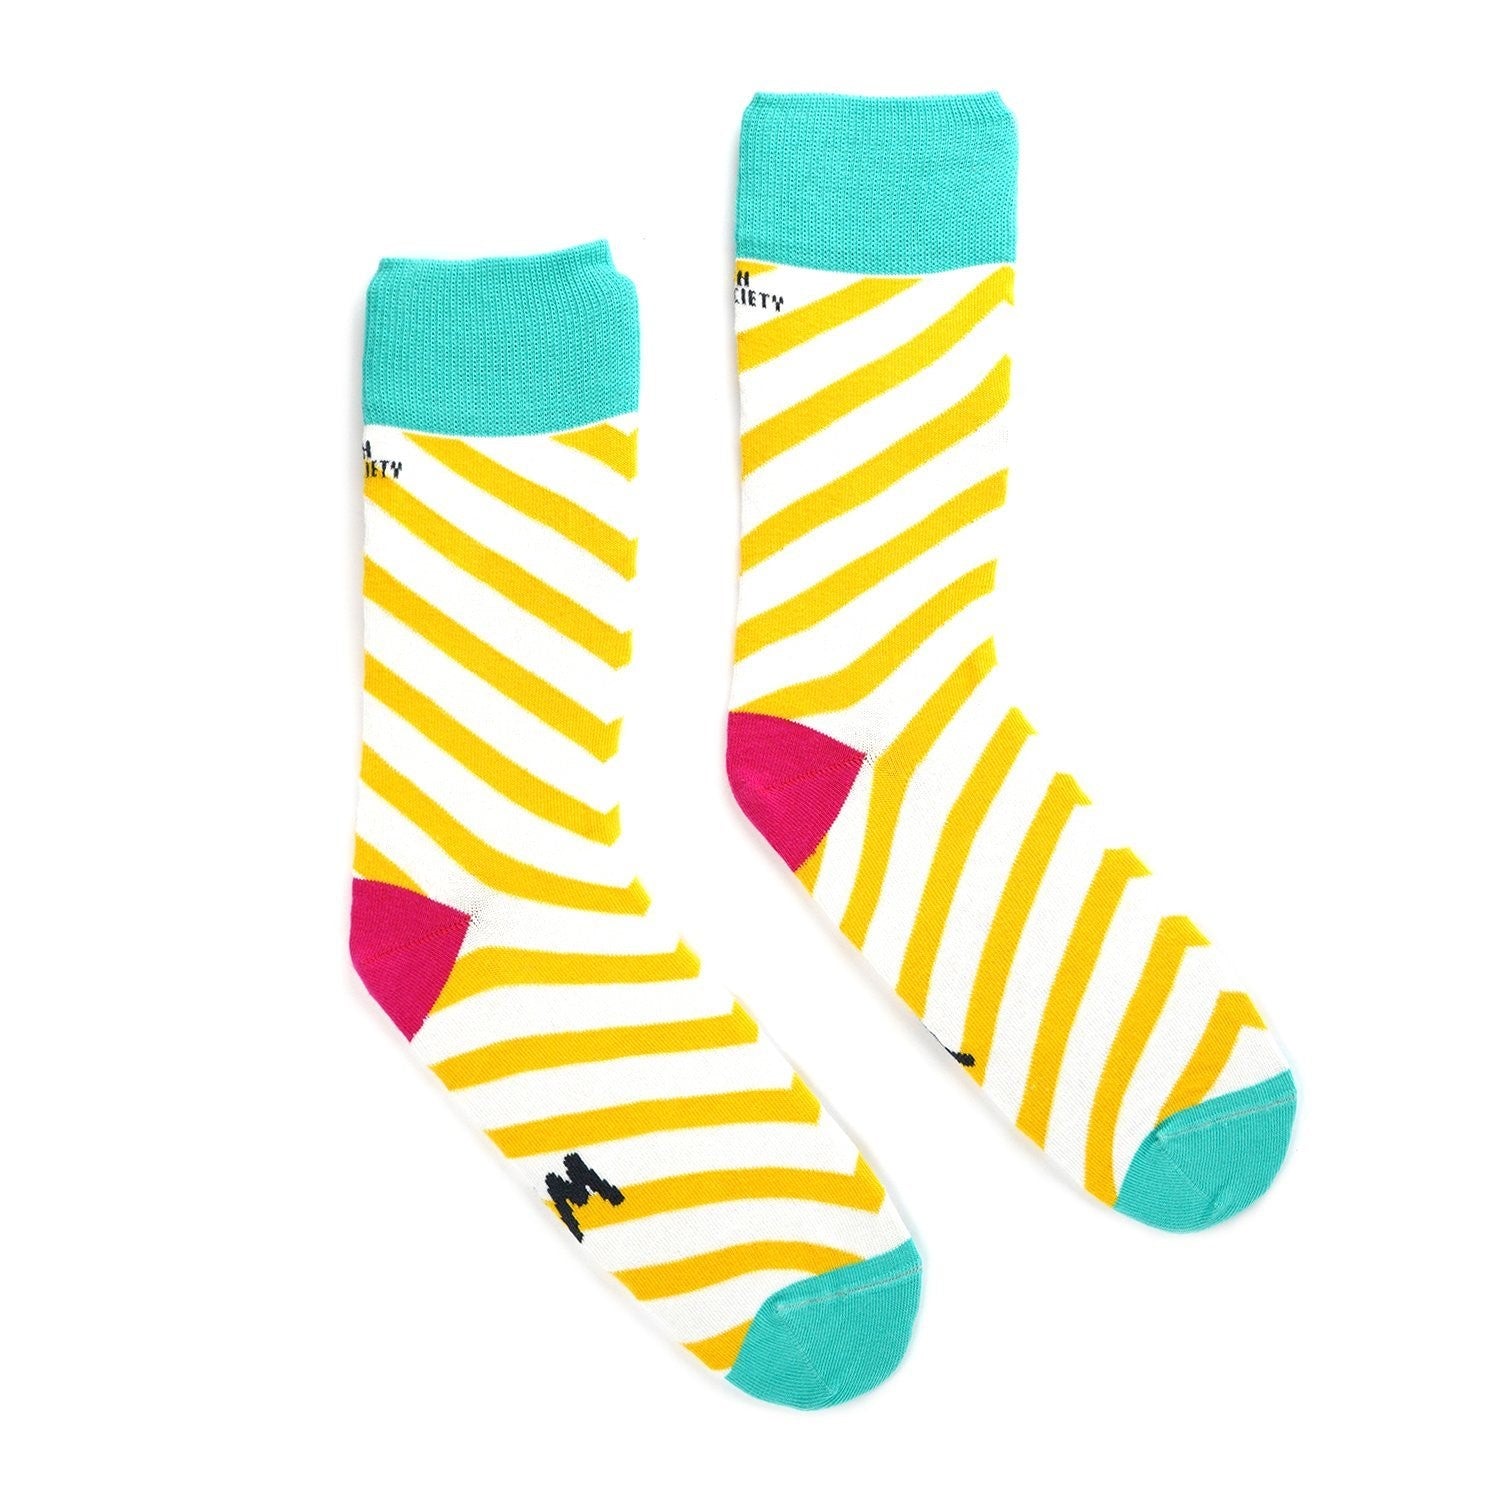 Irish Socksciety, Yer wan socks (size Size 3-7)